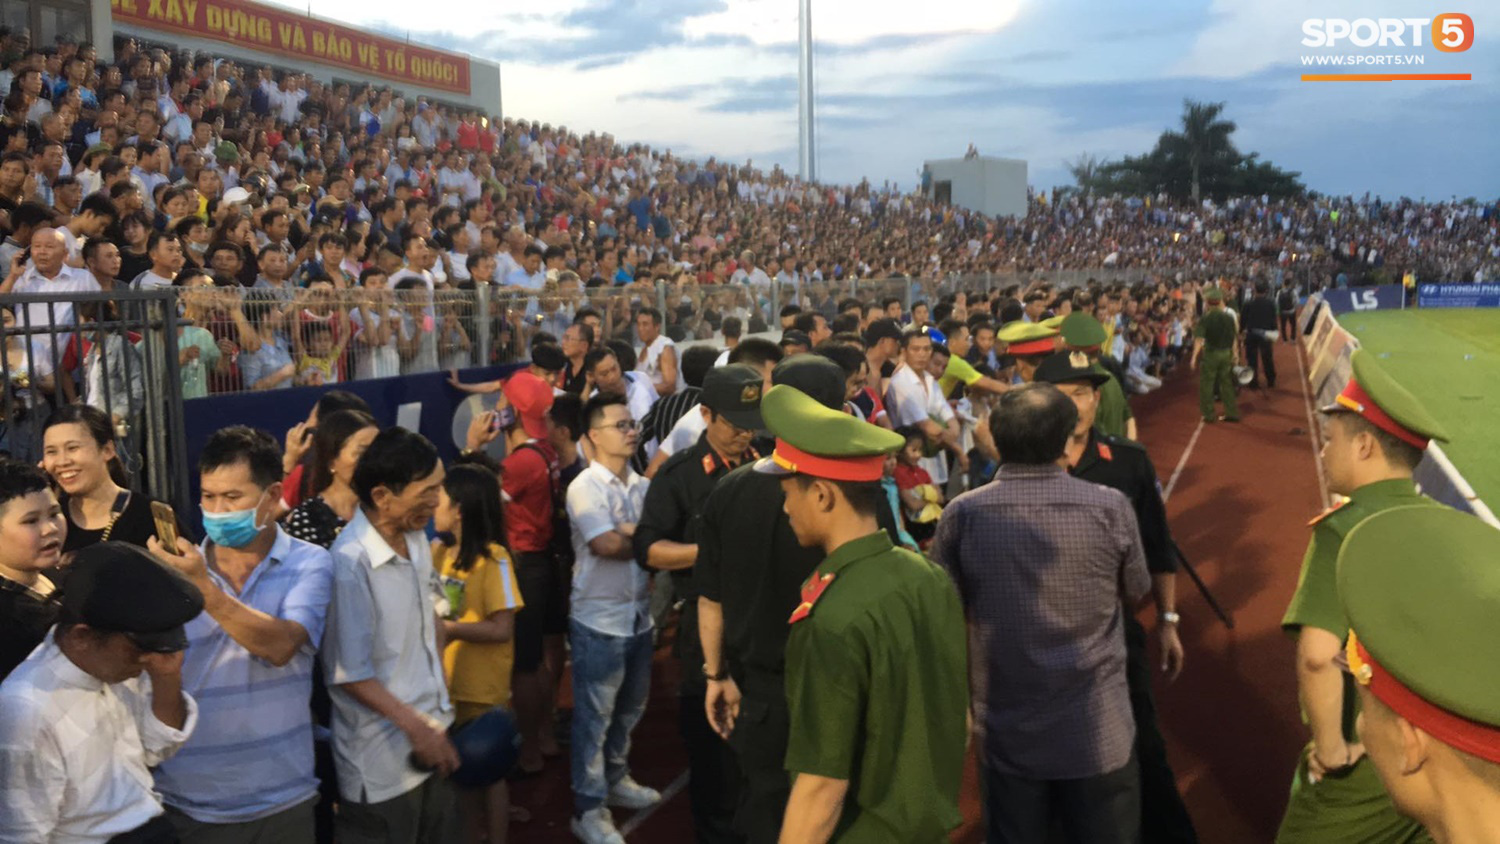 Vỡ sân vận động Hà Tĩnh, khán giả tràn qua hàng rào khiến trận đấu V.League trở nên hot nhất thế giới  - Ảnh 3.